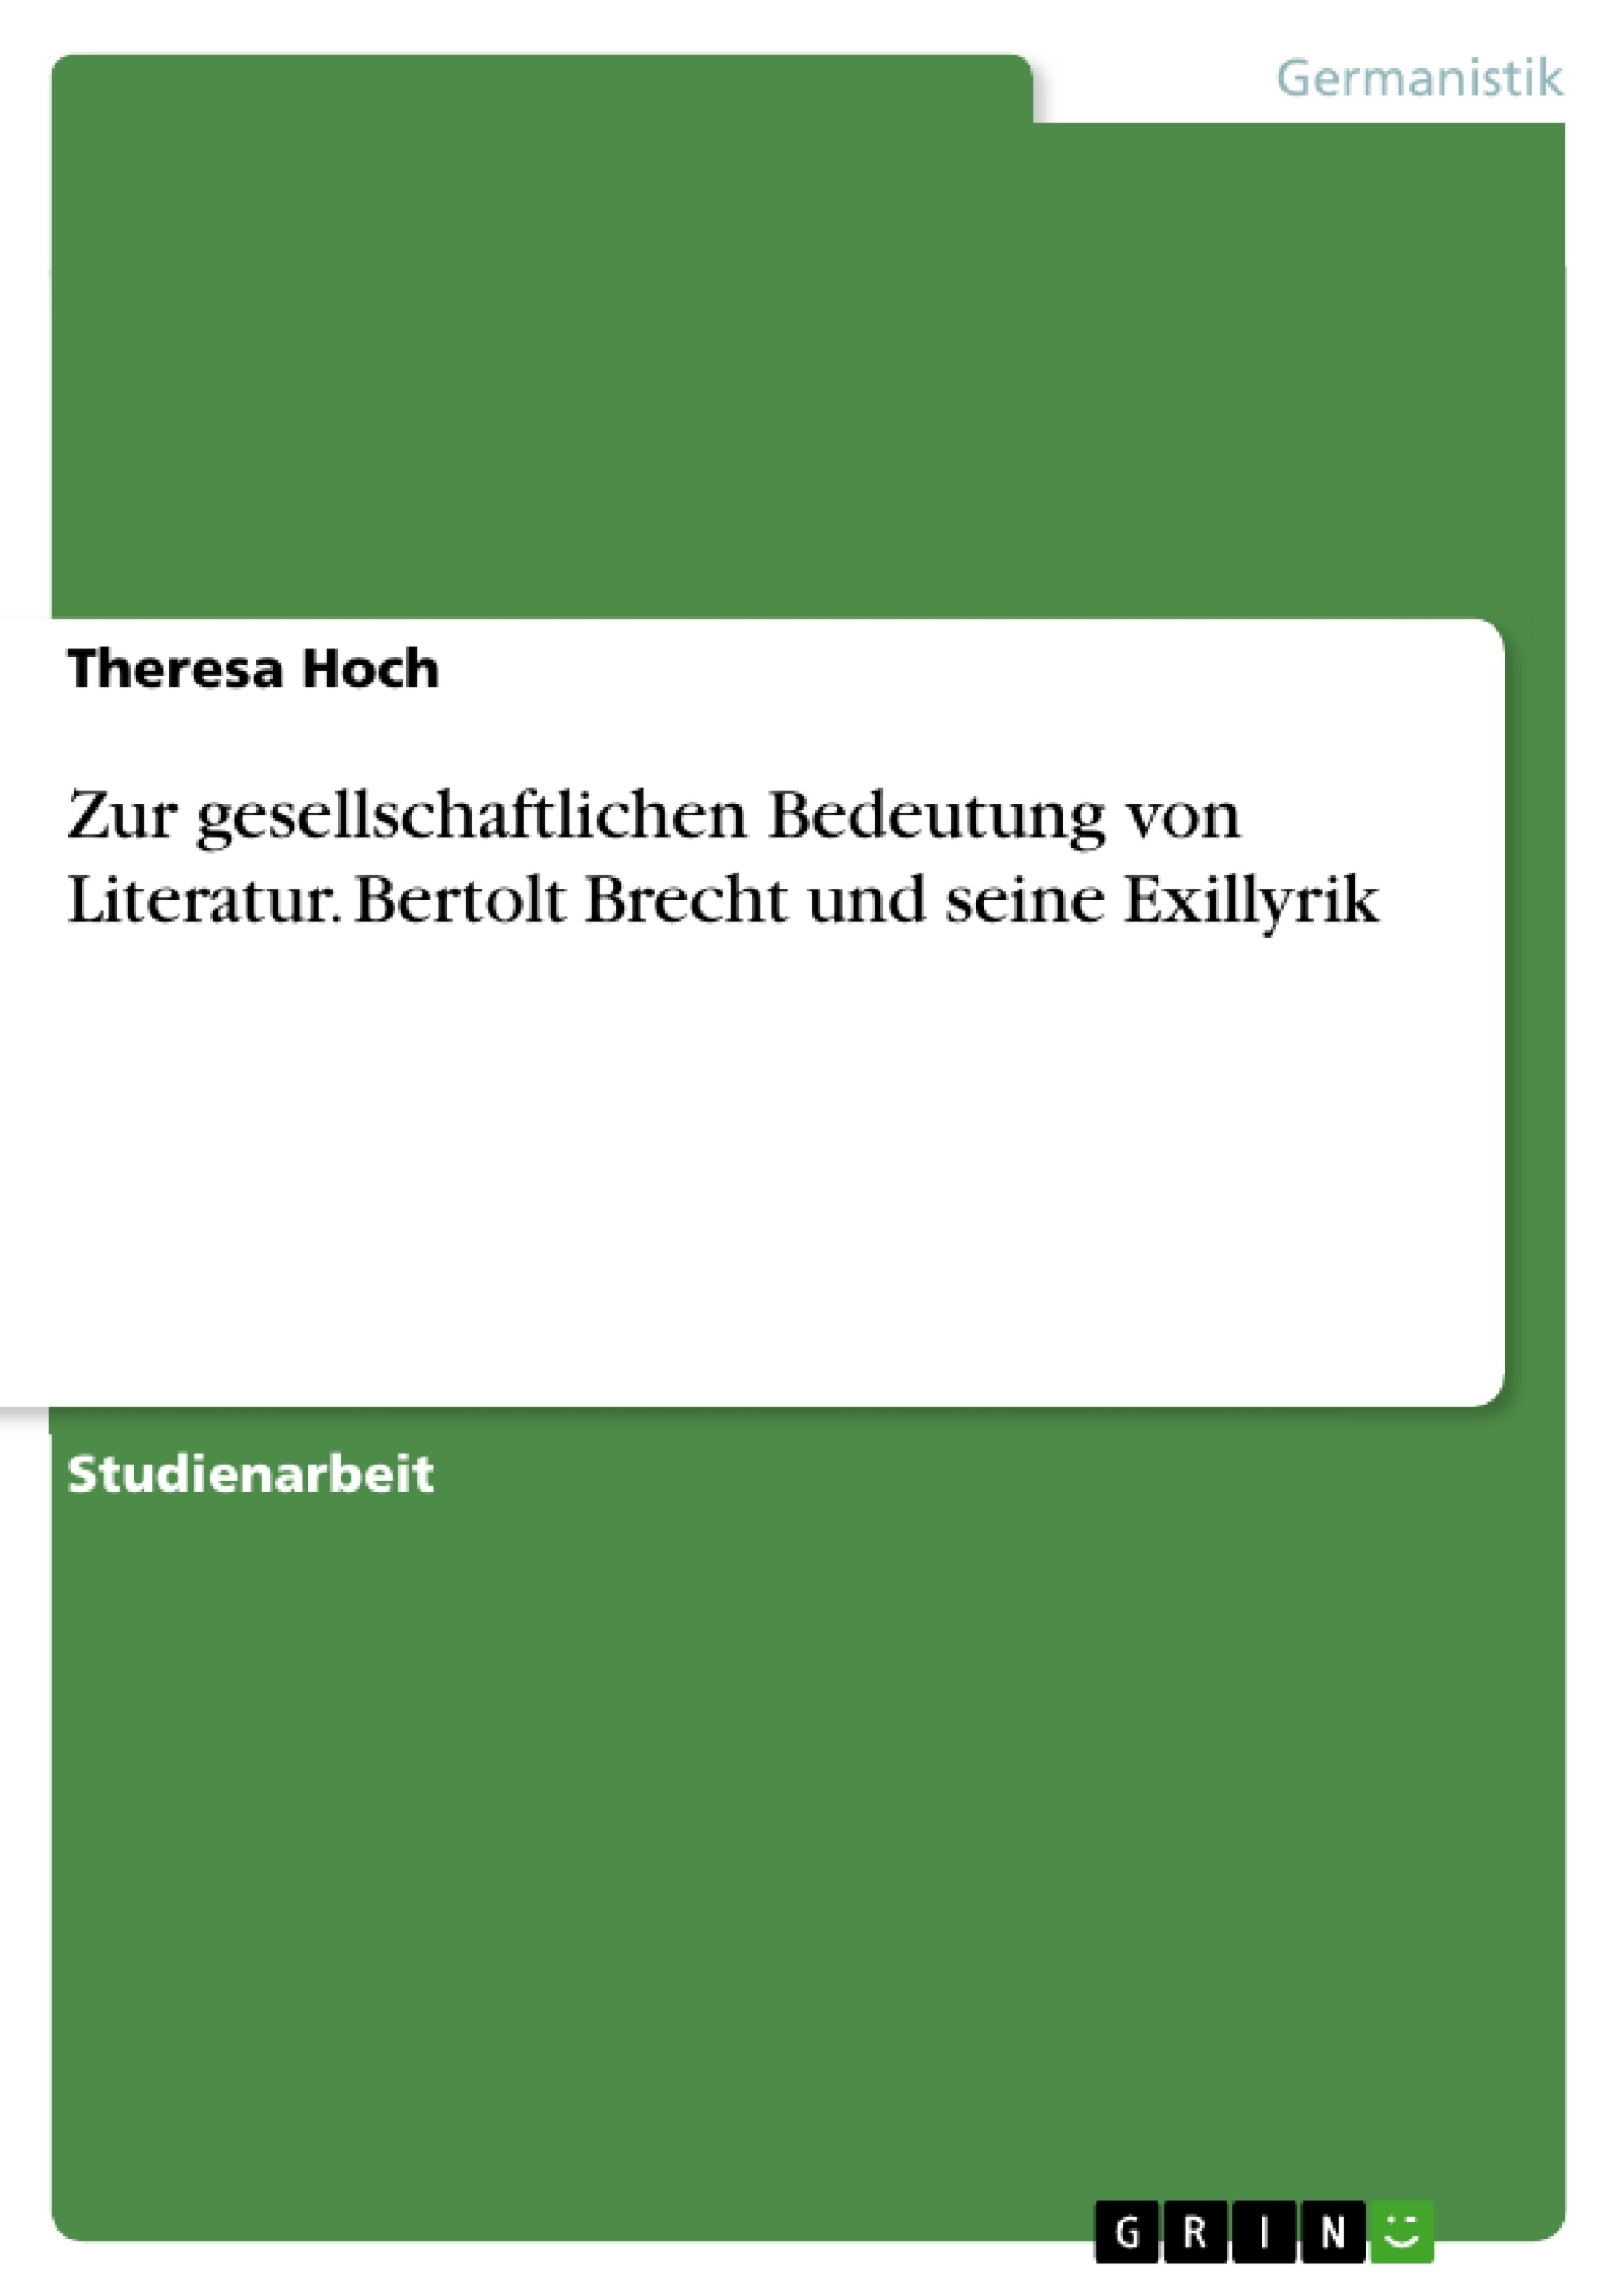 Título: Zur gesellschaftlichen Bedeutung von Literatur. Bertolt Brecht und seine Exillyrik